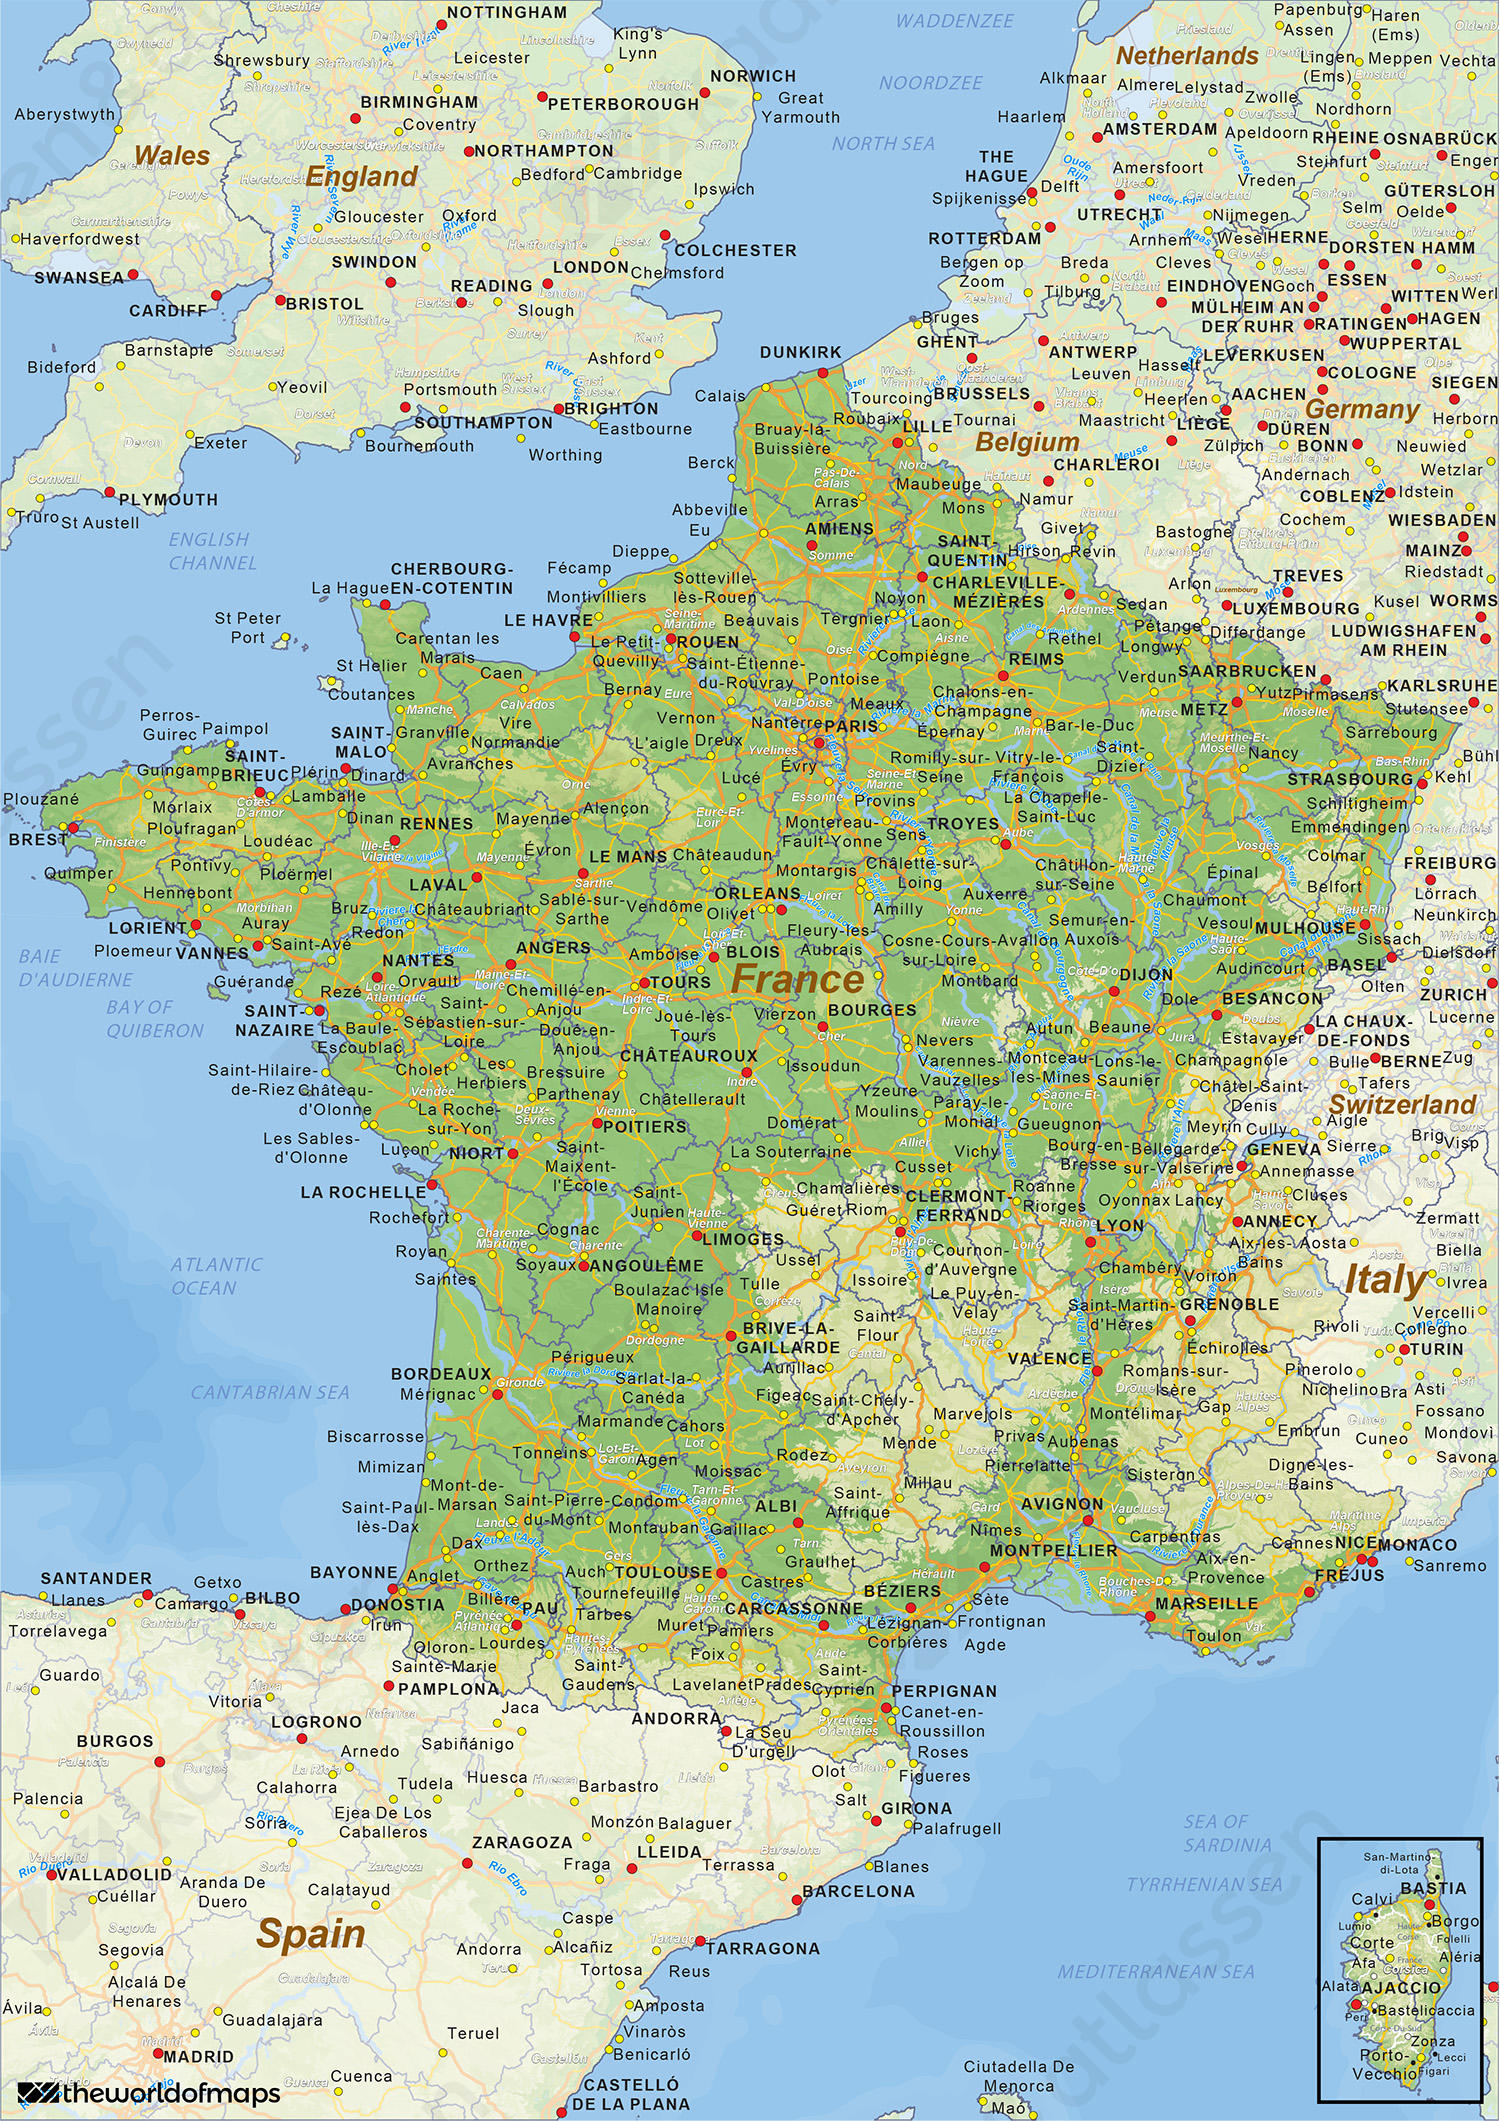 Verleiding Slip schoenen van nu af aan Digitale Natuurkundige landkaart Frankrijk 1433 | Kaarten en Atlassen.nl